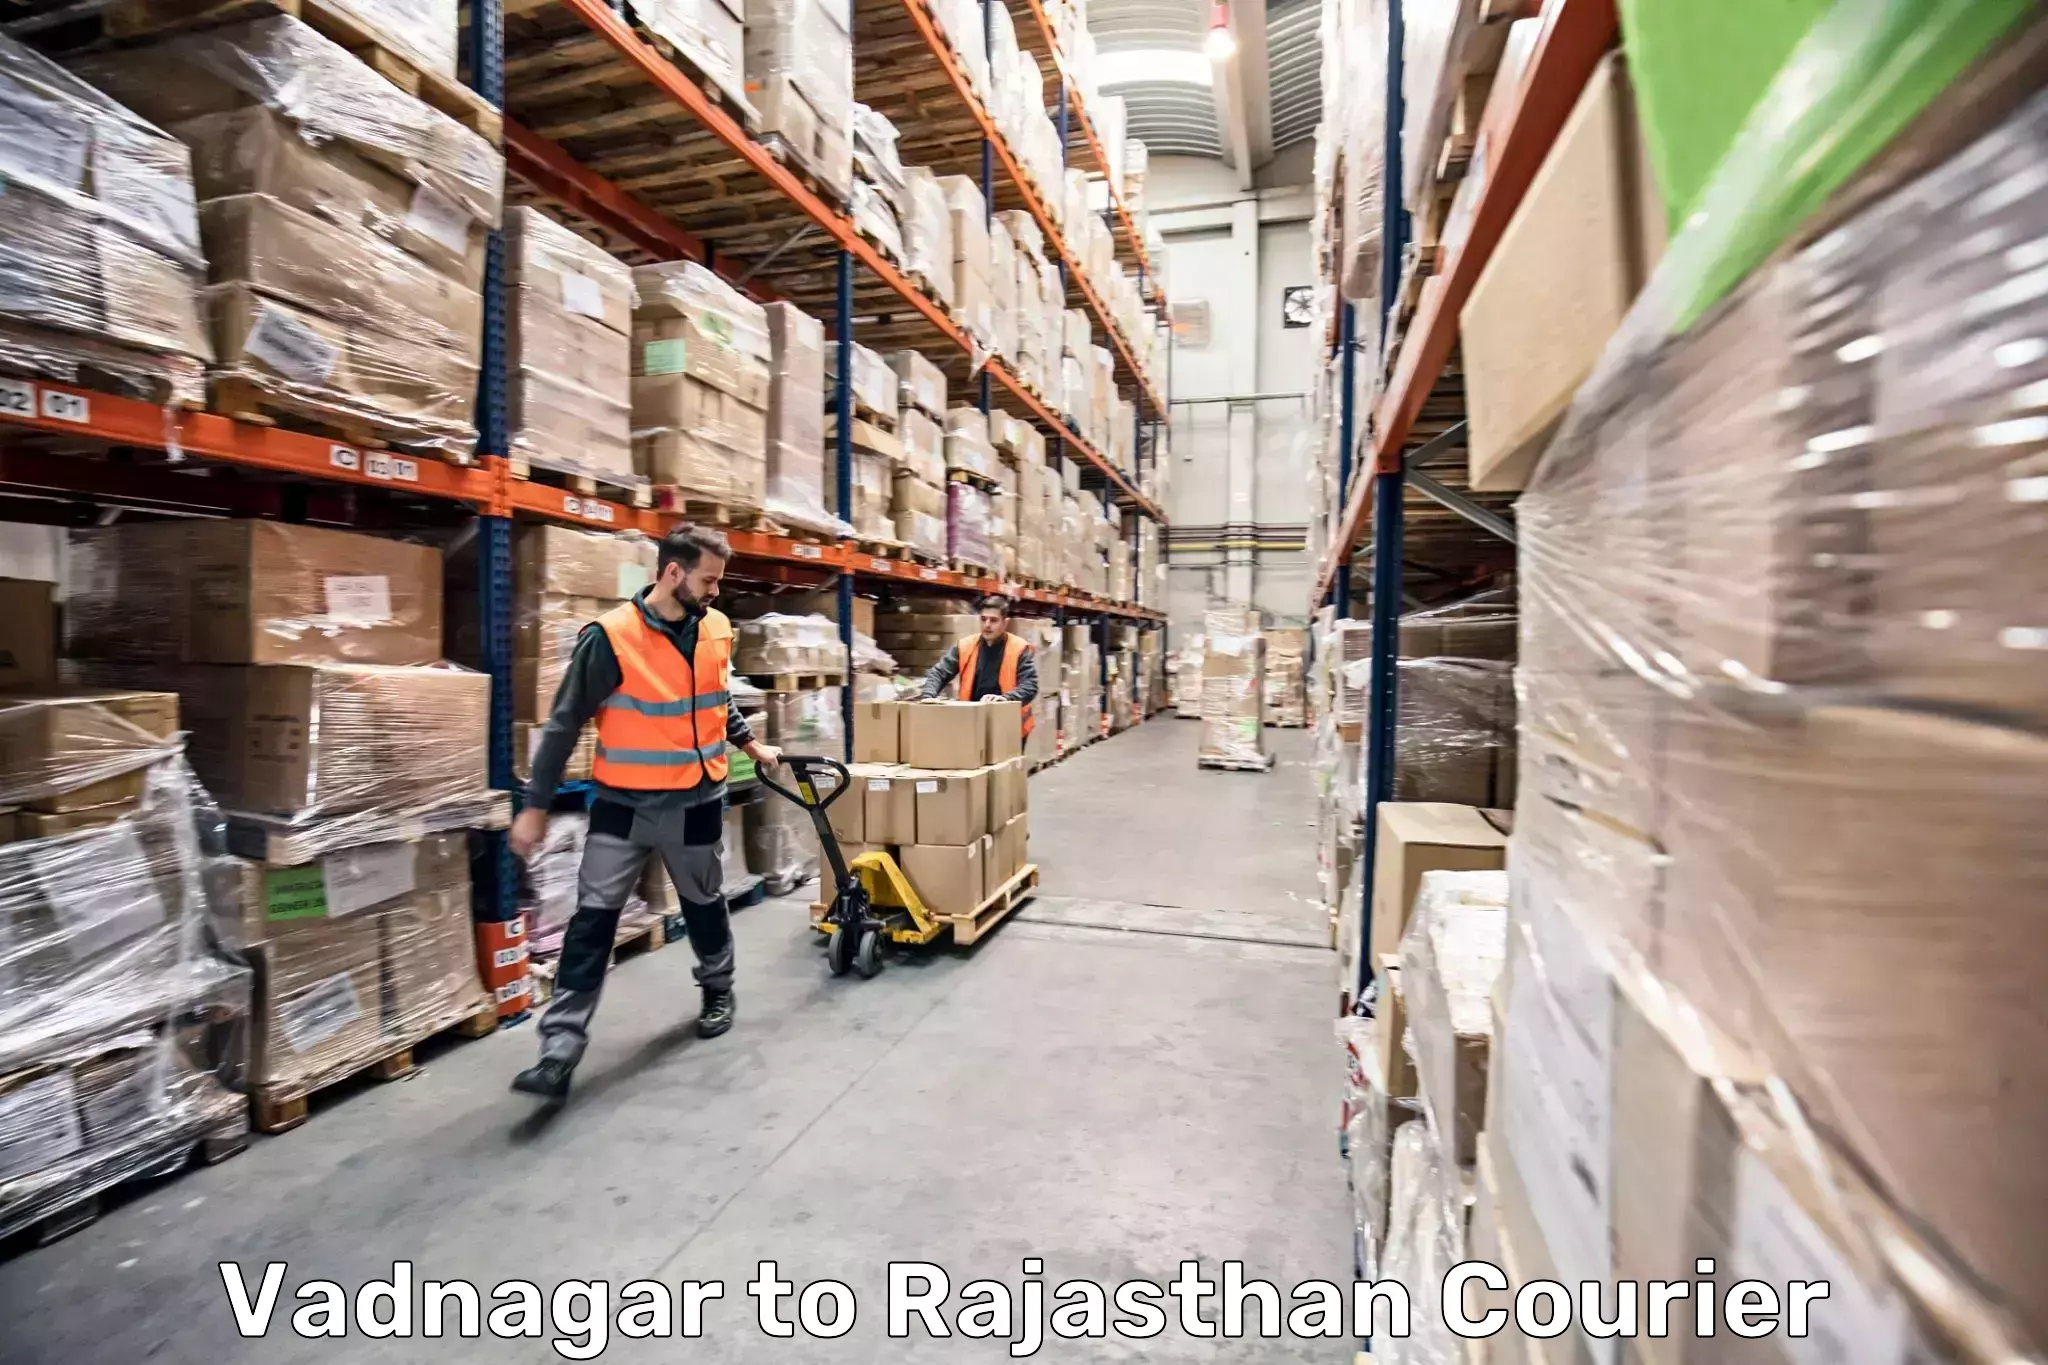 Luggage transport deals Vadnagar to Laxmangarh